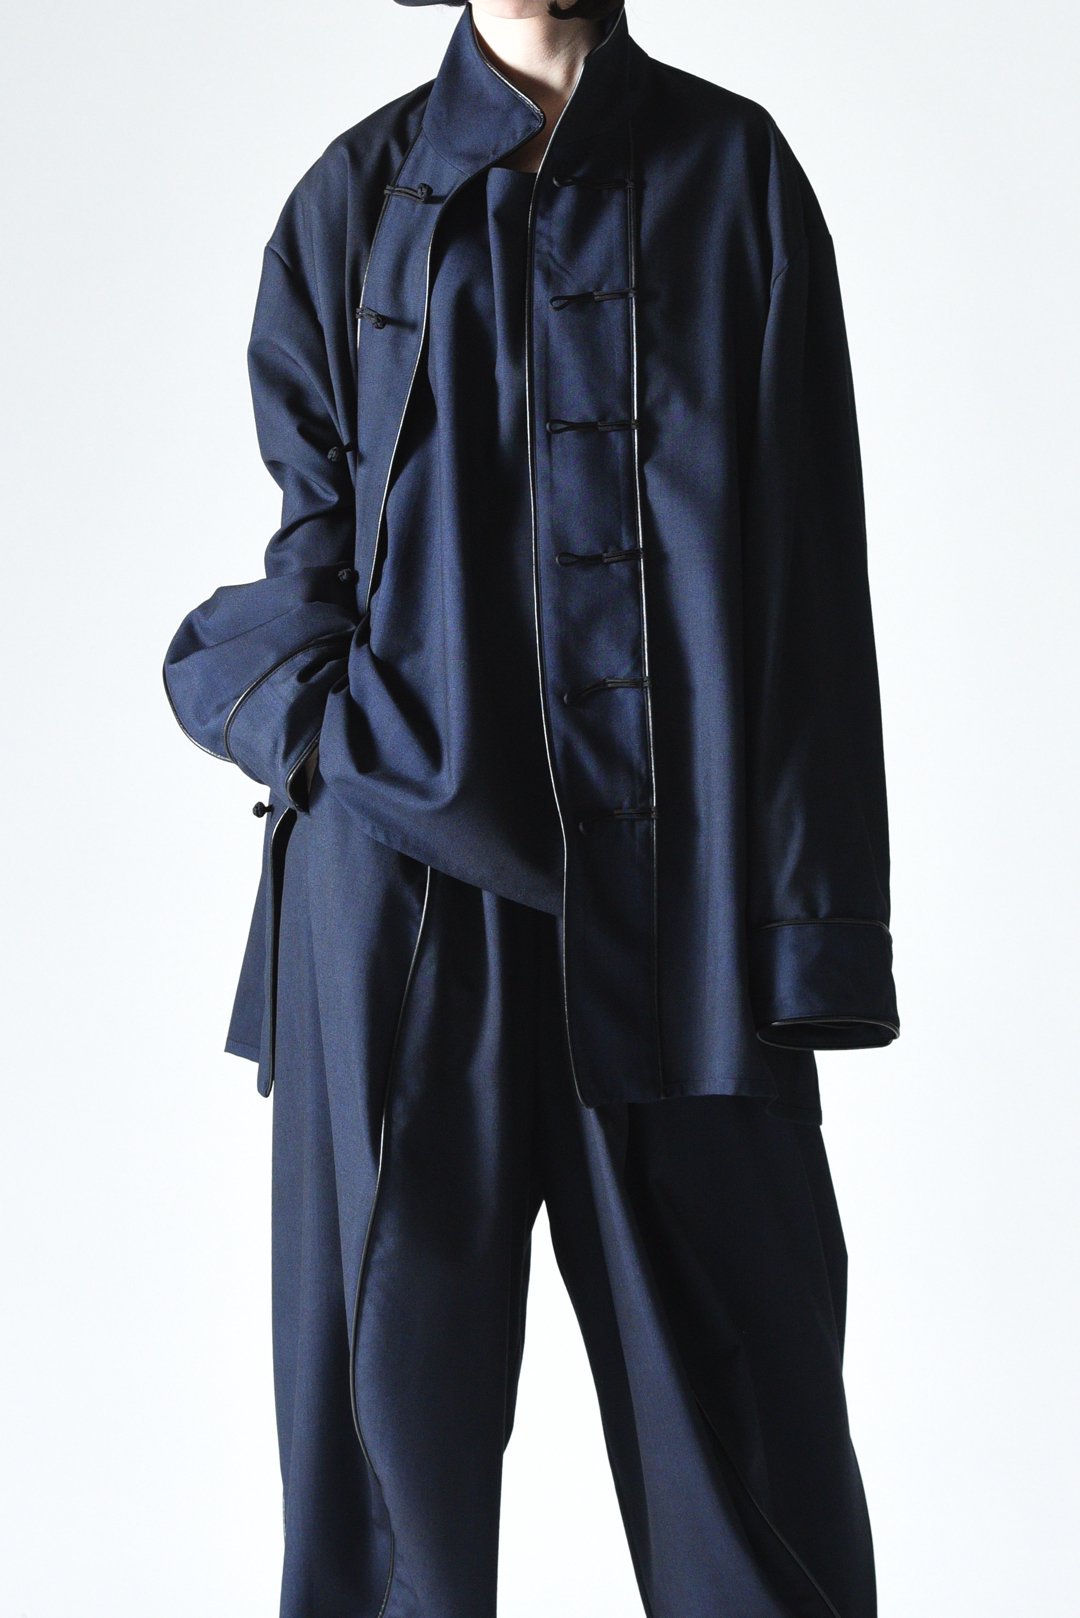 BISHOOL Urban Wool Leather Piping China Jacket black×blue 